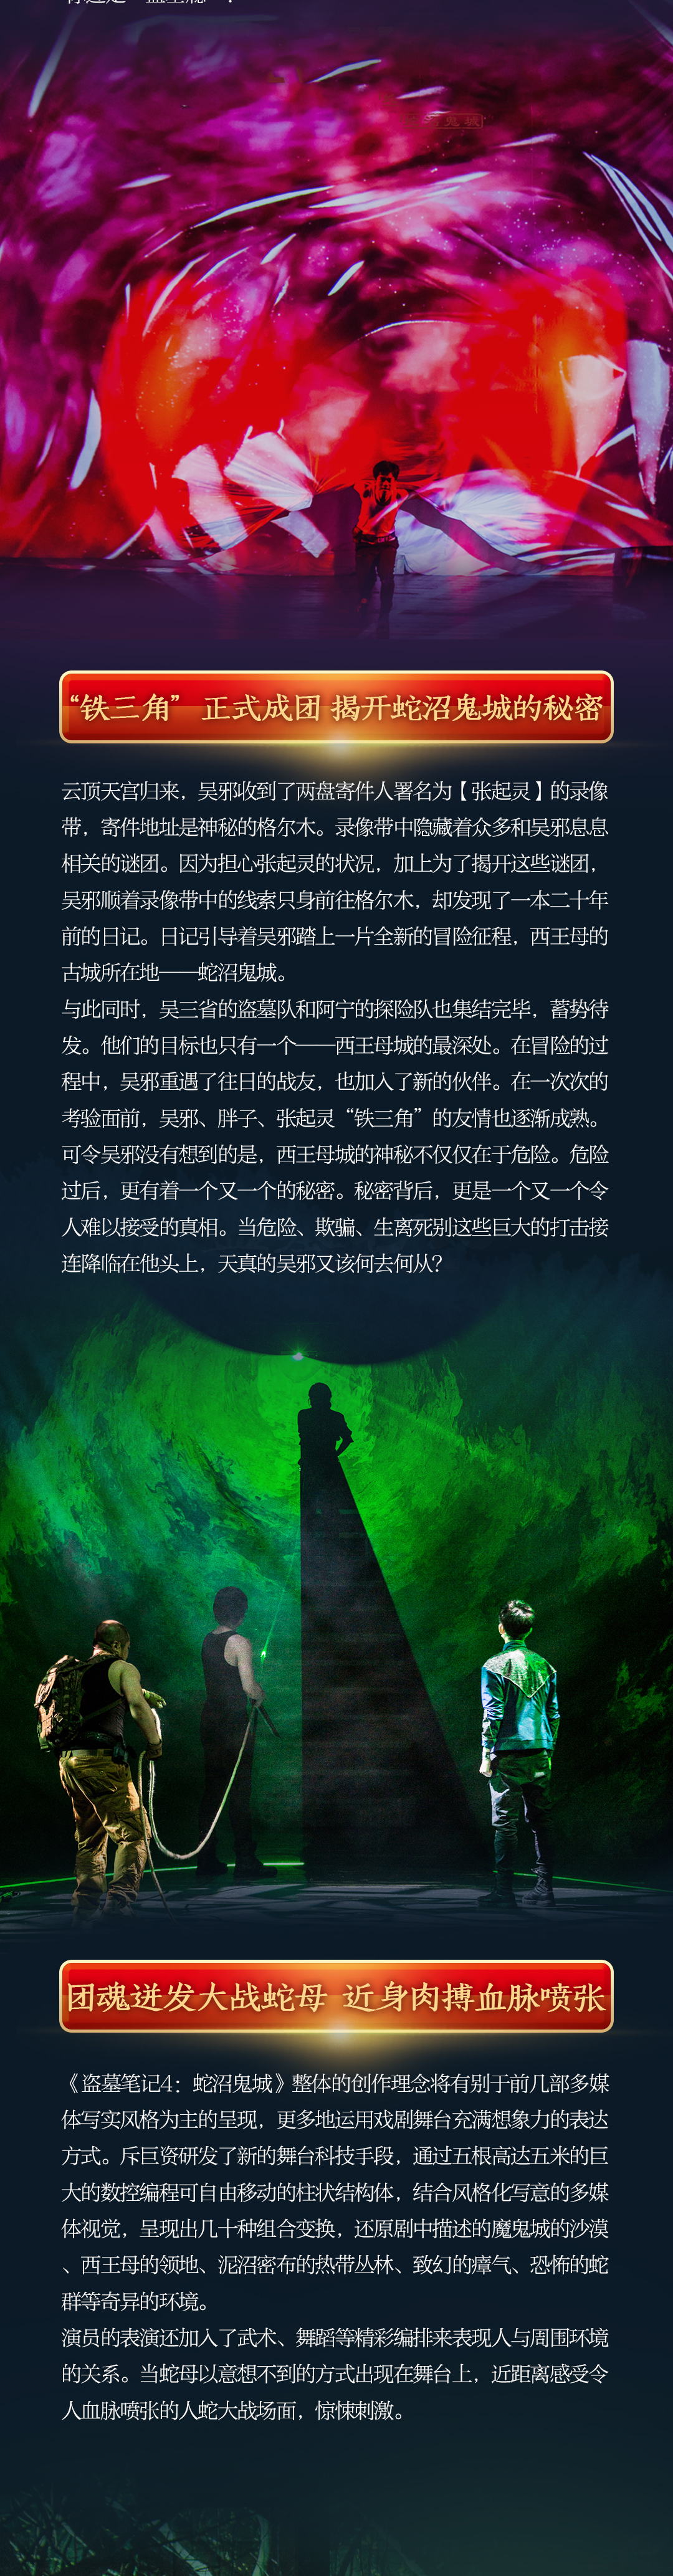 2021大型魔幻惊悚话剧《盗墓笔记IV：蛇沼鬼城》-成都站